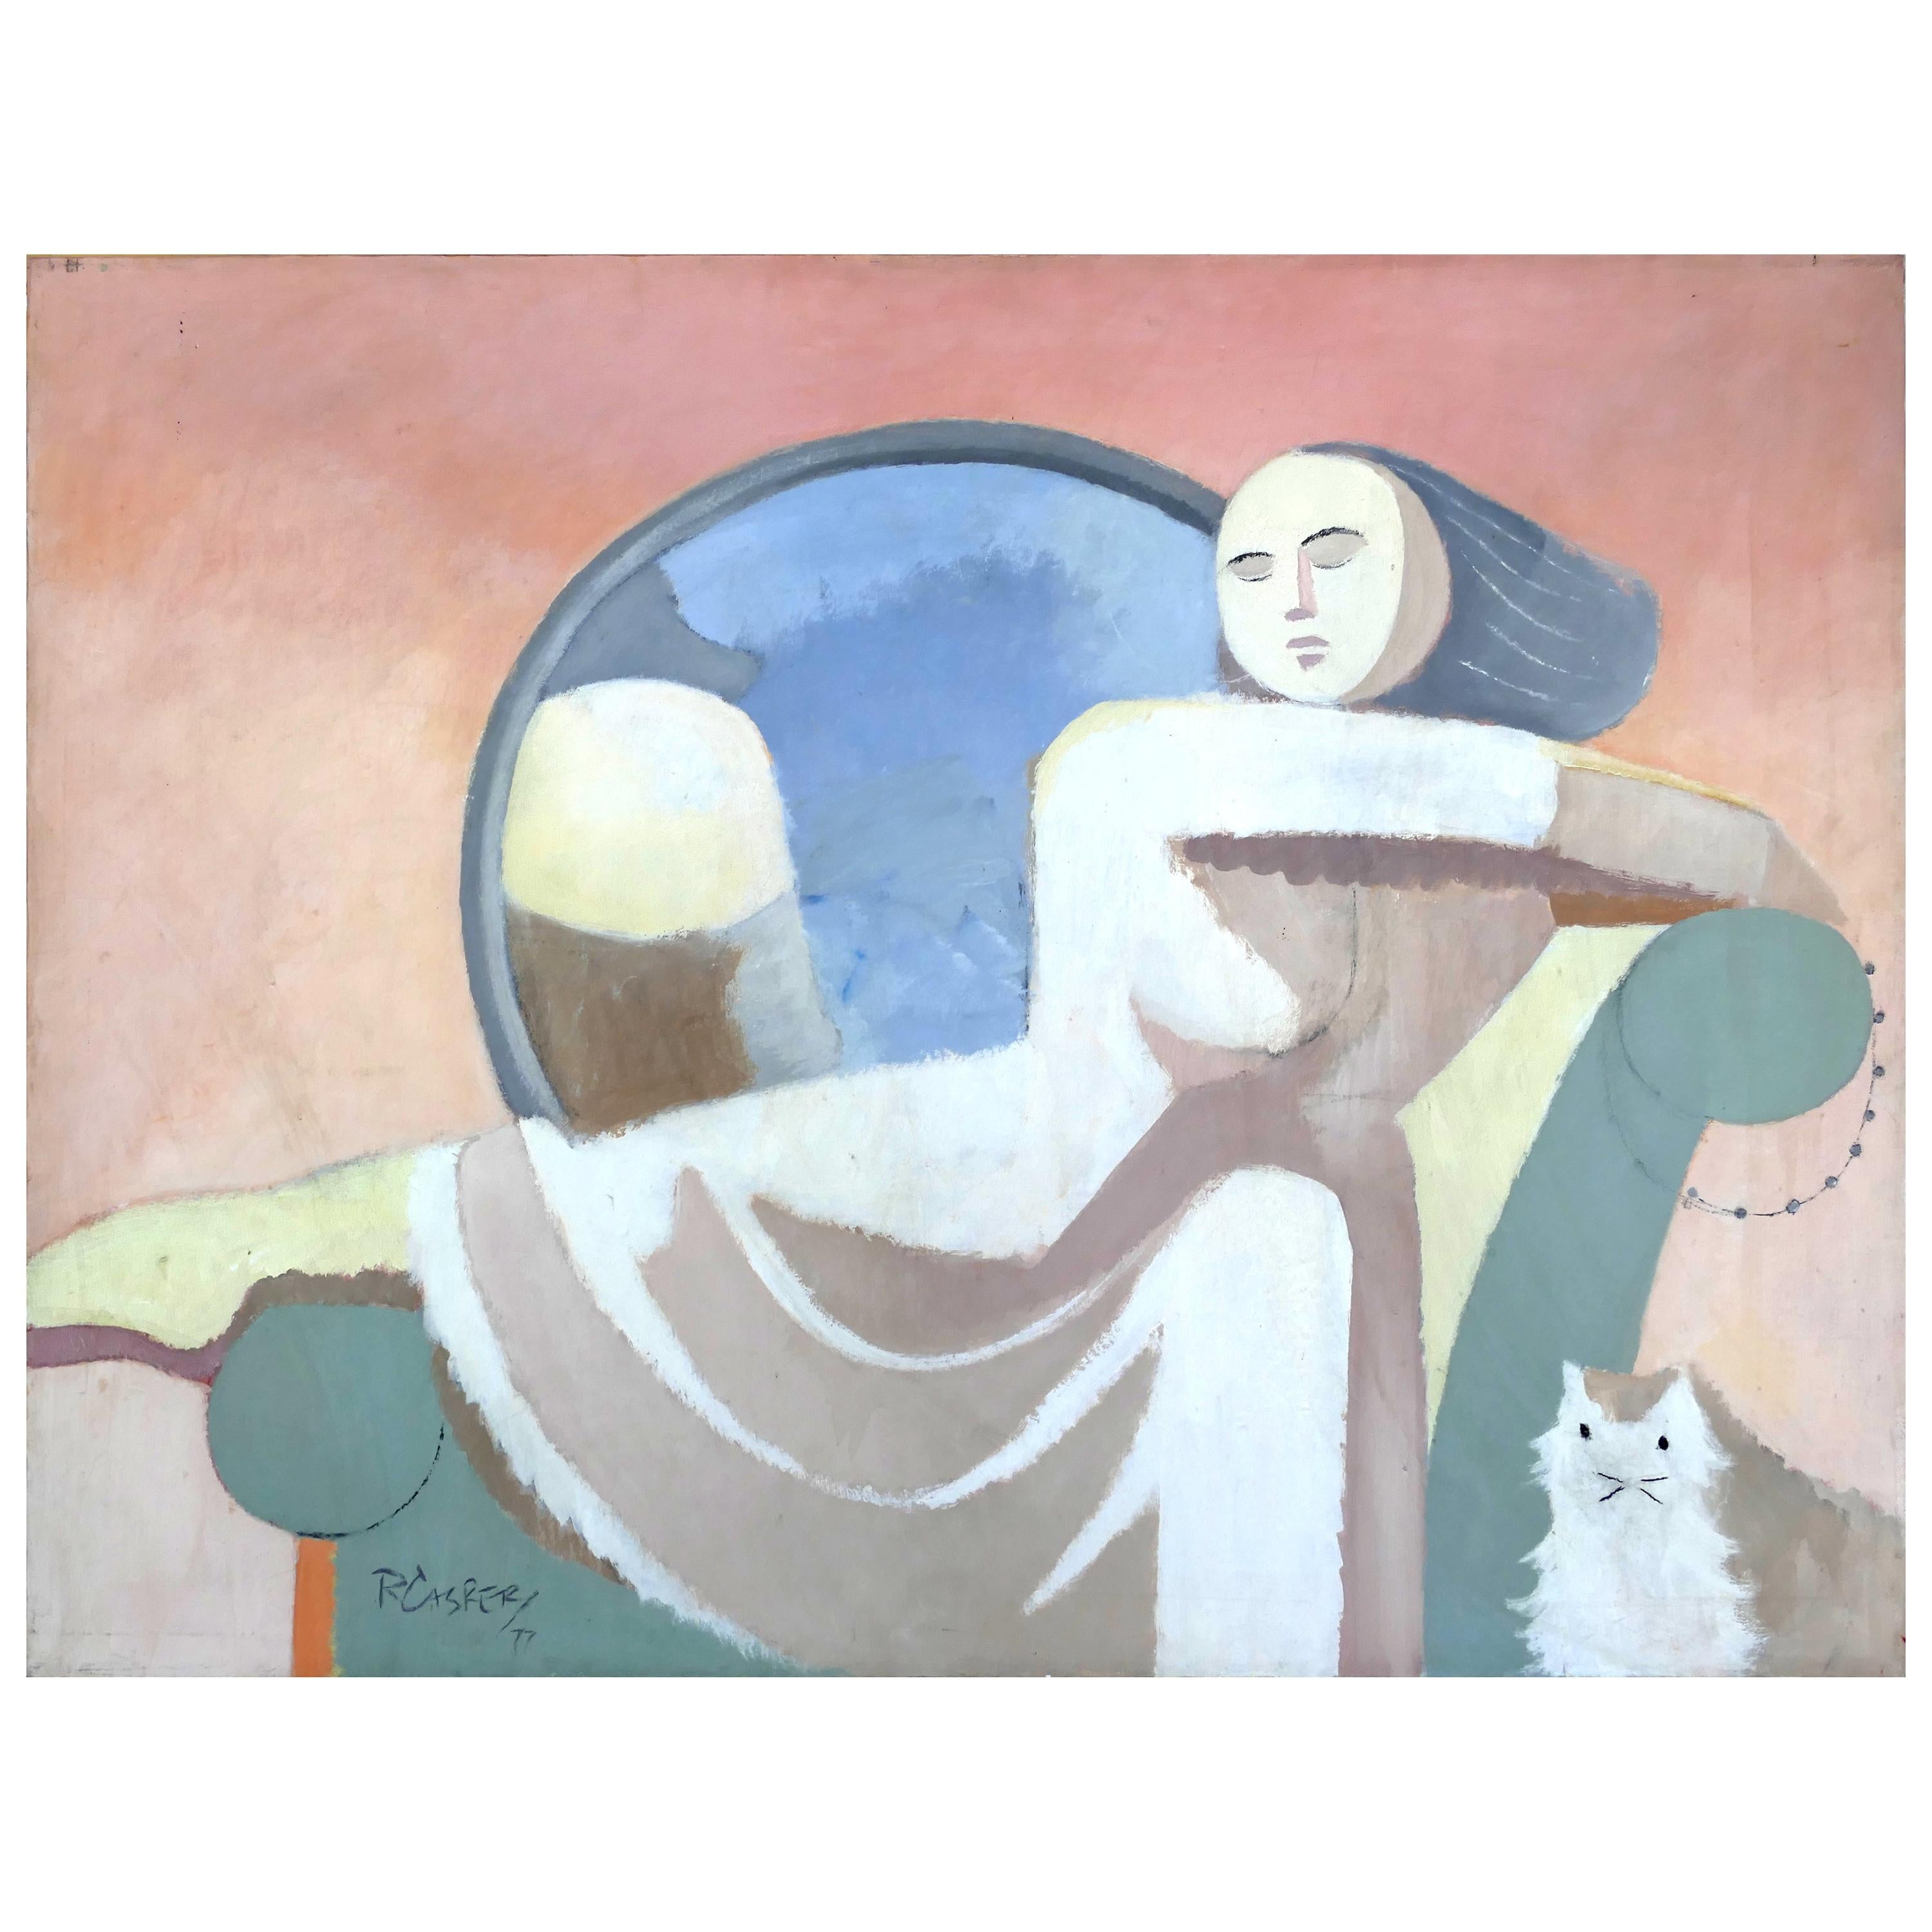 Grande peinture abstraite vintage de Robert Casper, Femme et chat, 1977